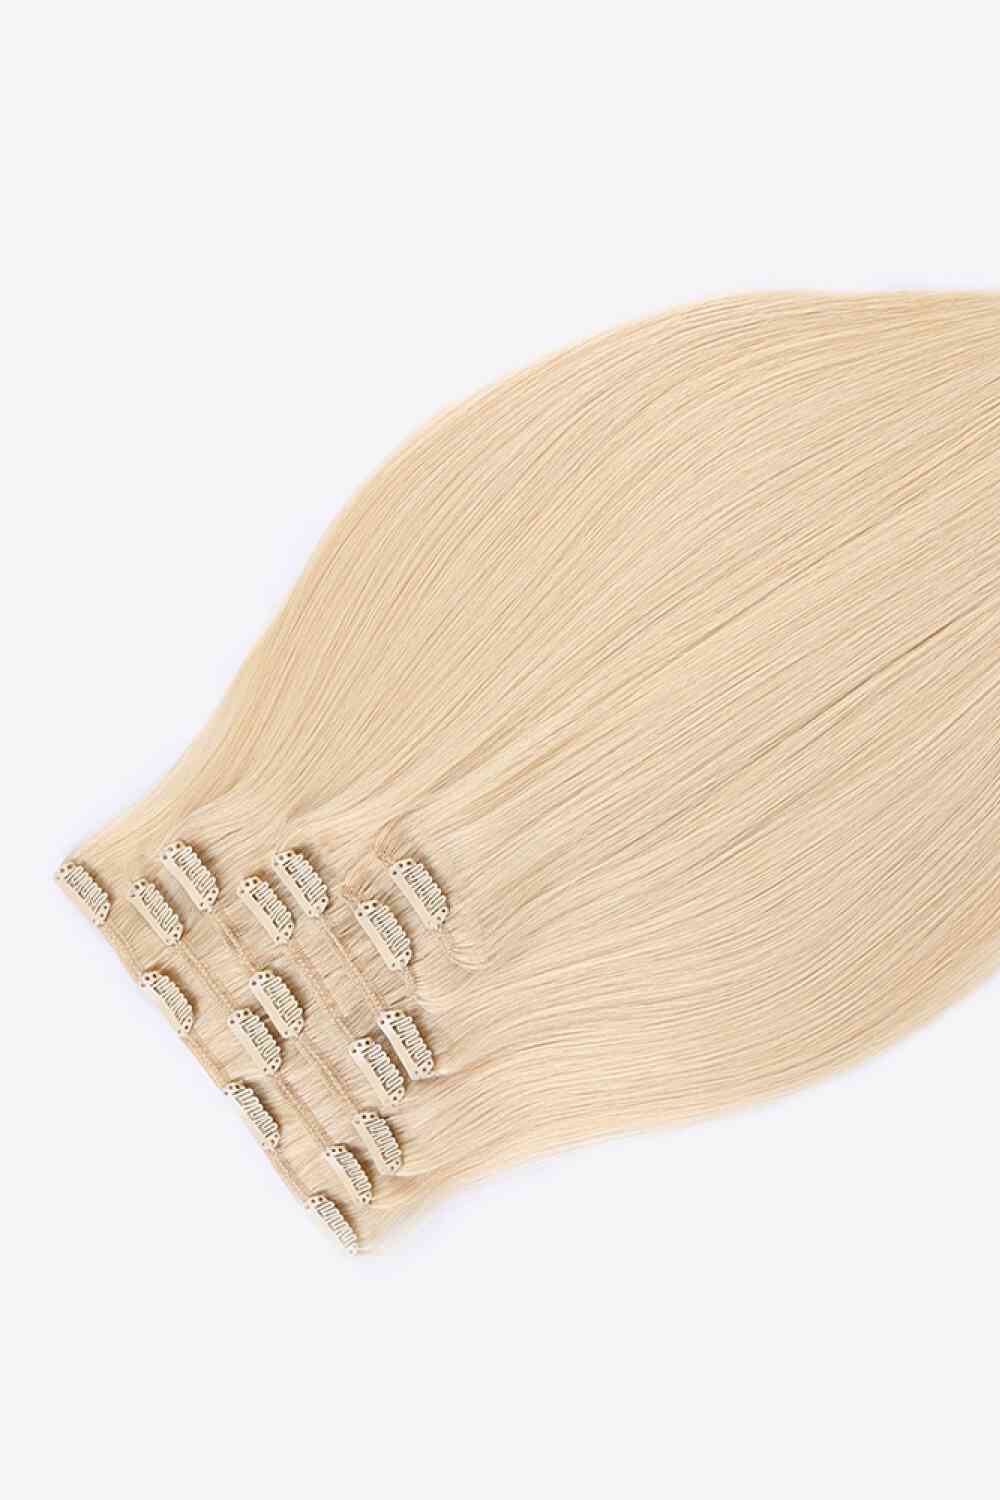 Extensiones de cabello con clip de 18" y 120 g, cabello humano indio en rubio